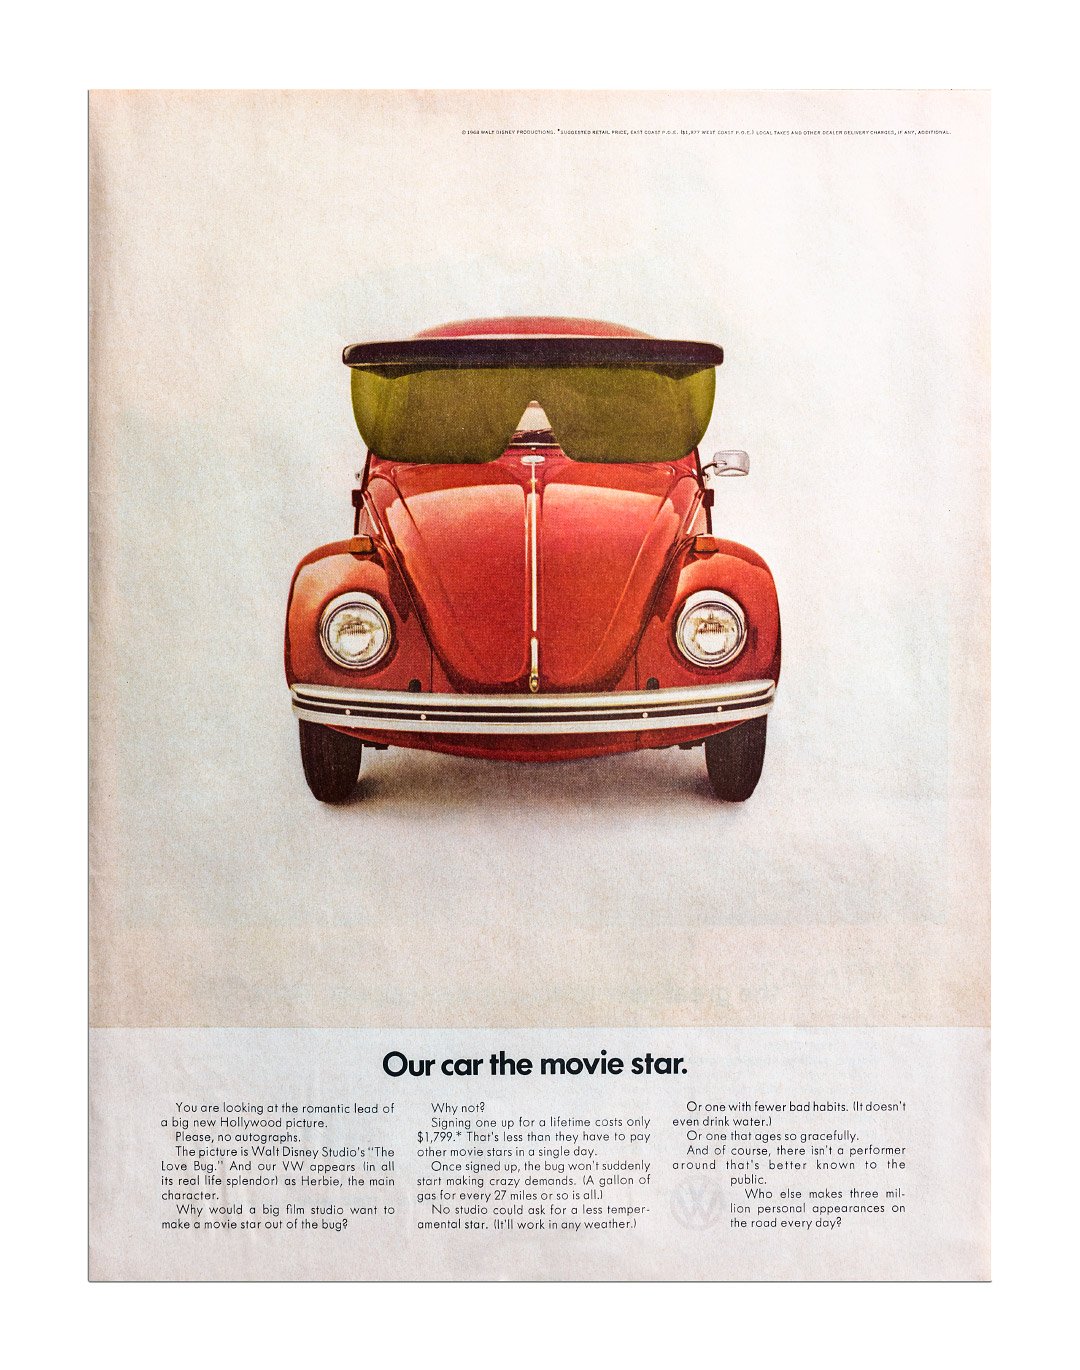 1969-volkswagen-beetle-print-advertisement.jpg